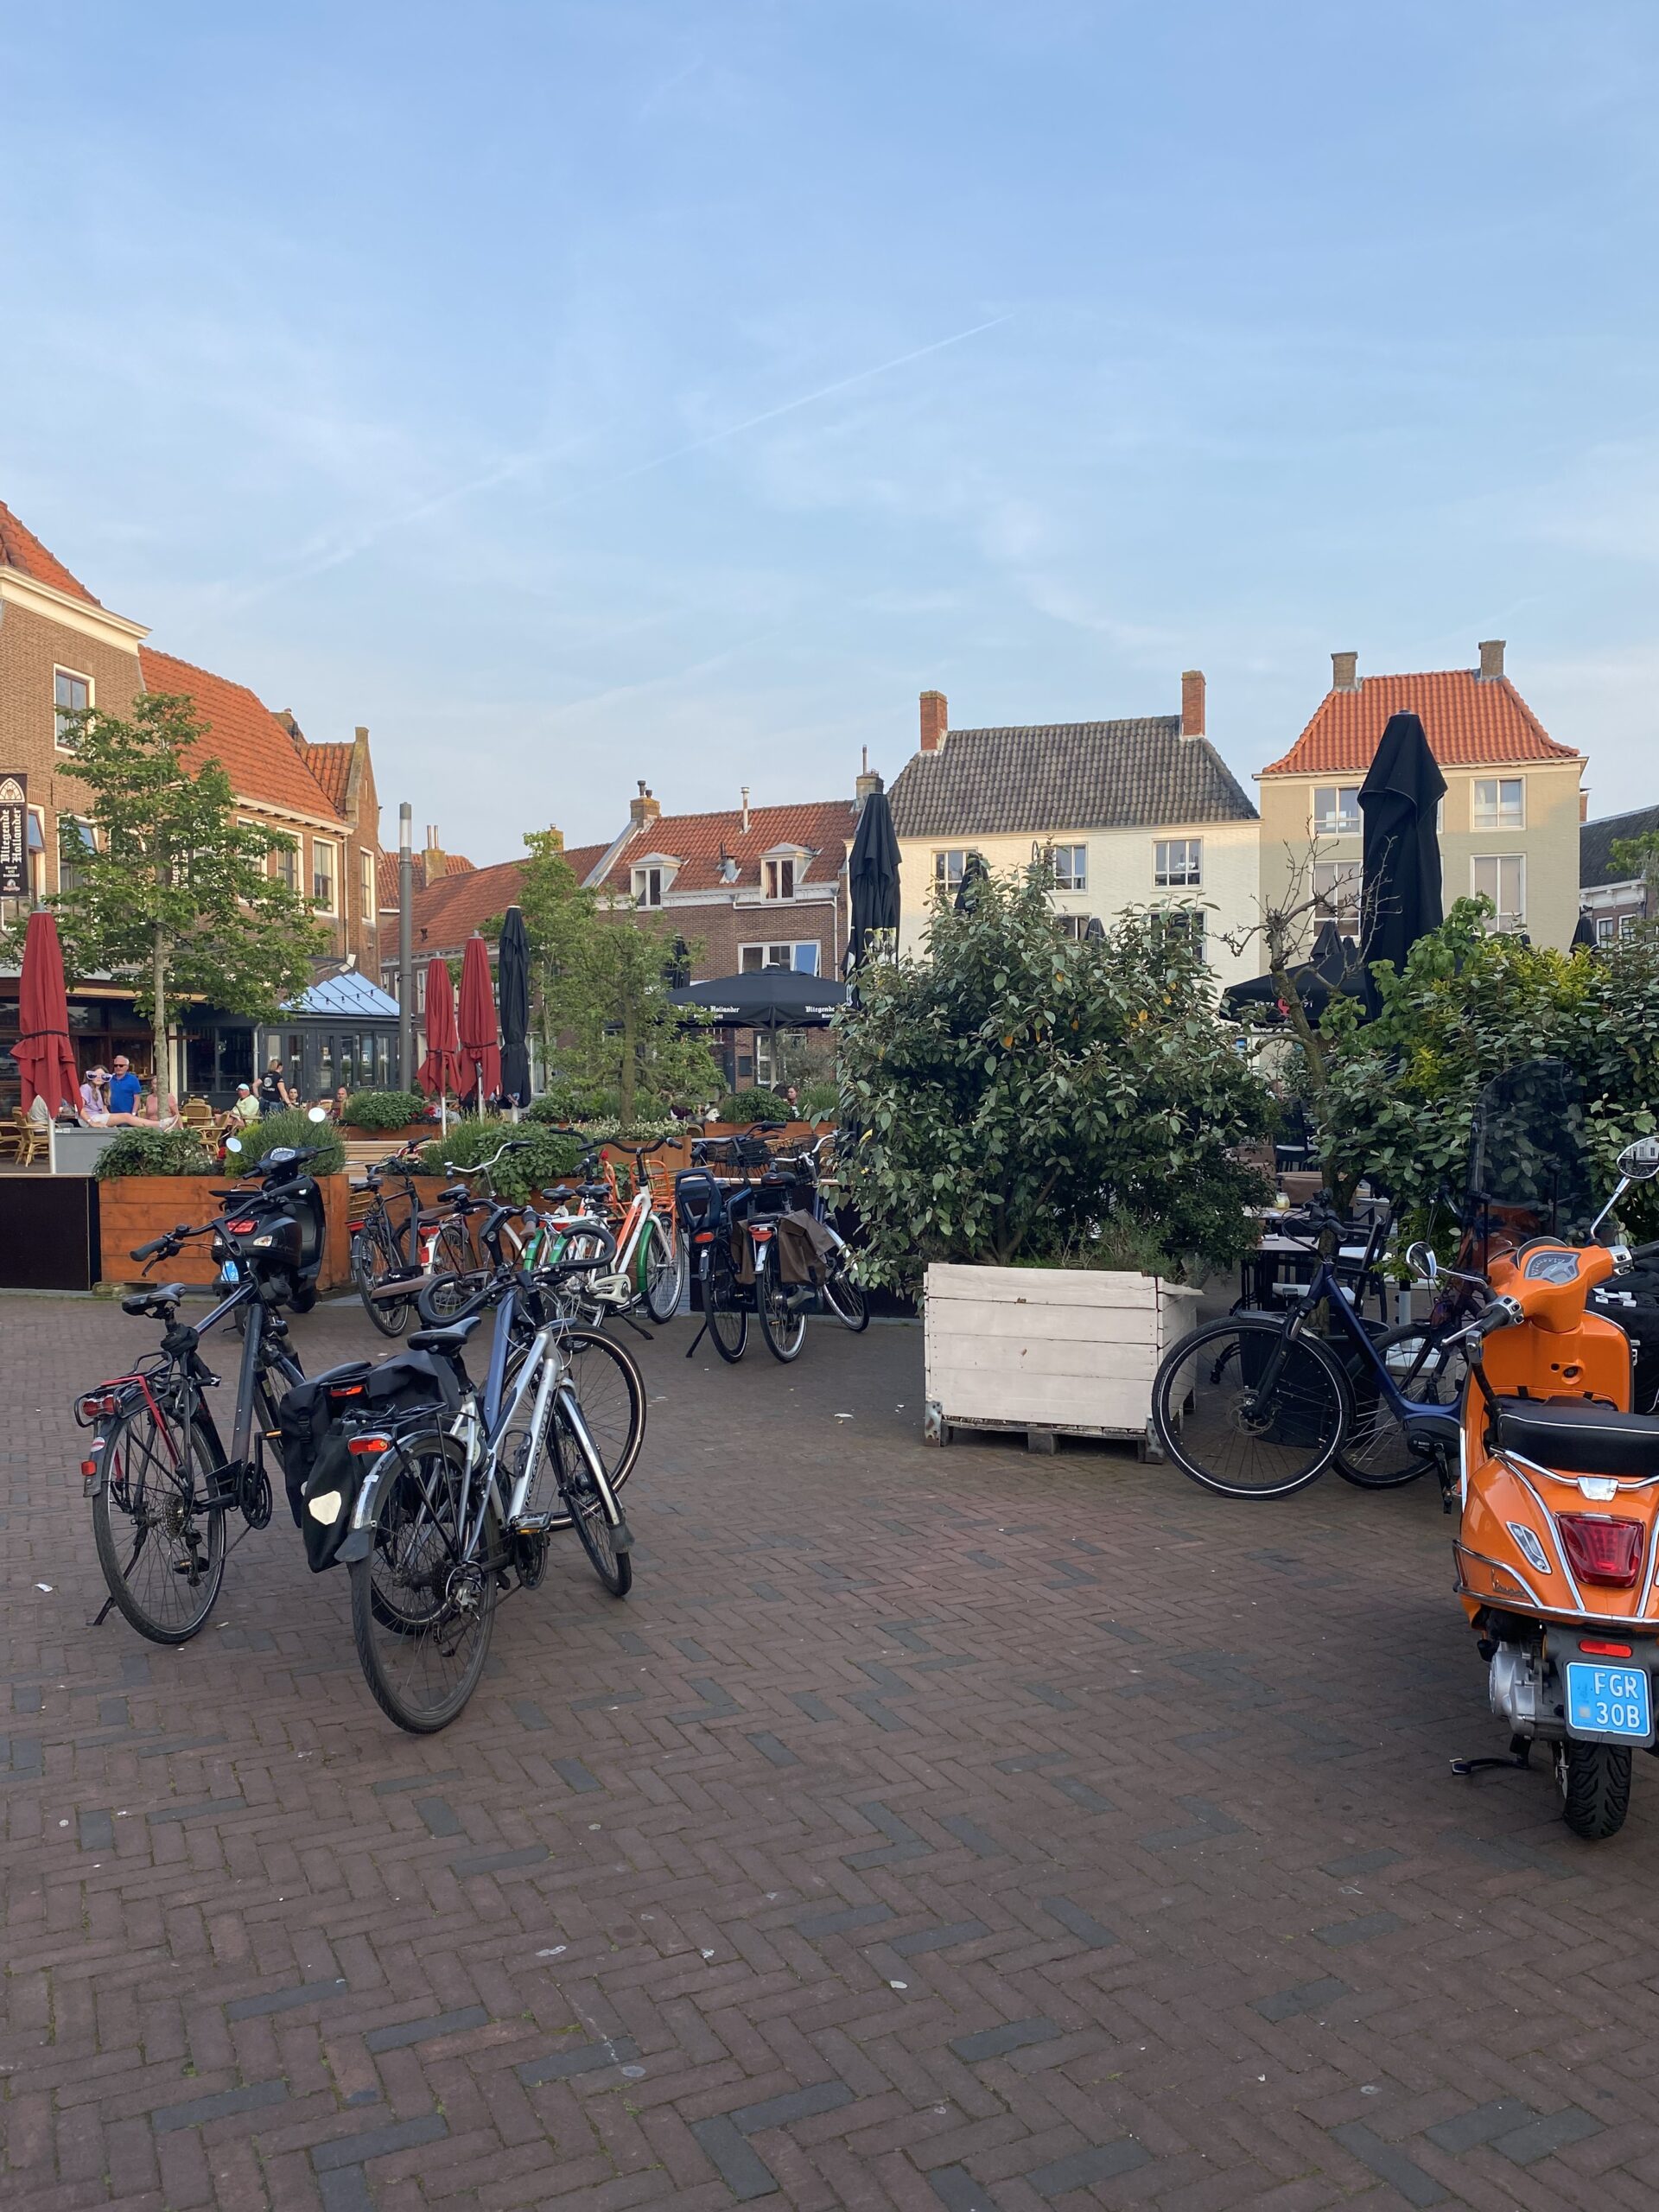 Vragen over terrassen en uitstallingen in binnenstad Middelburg